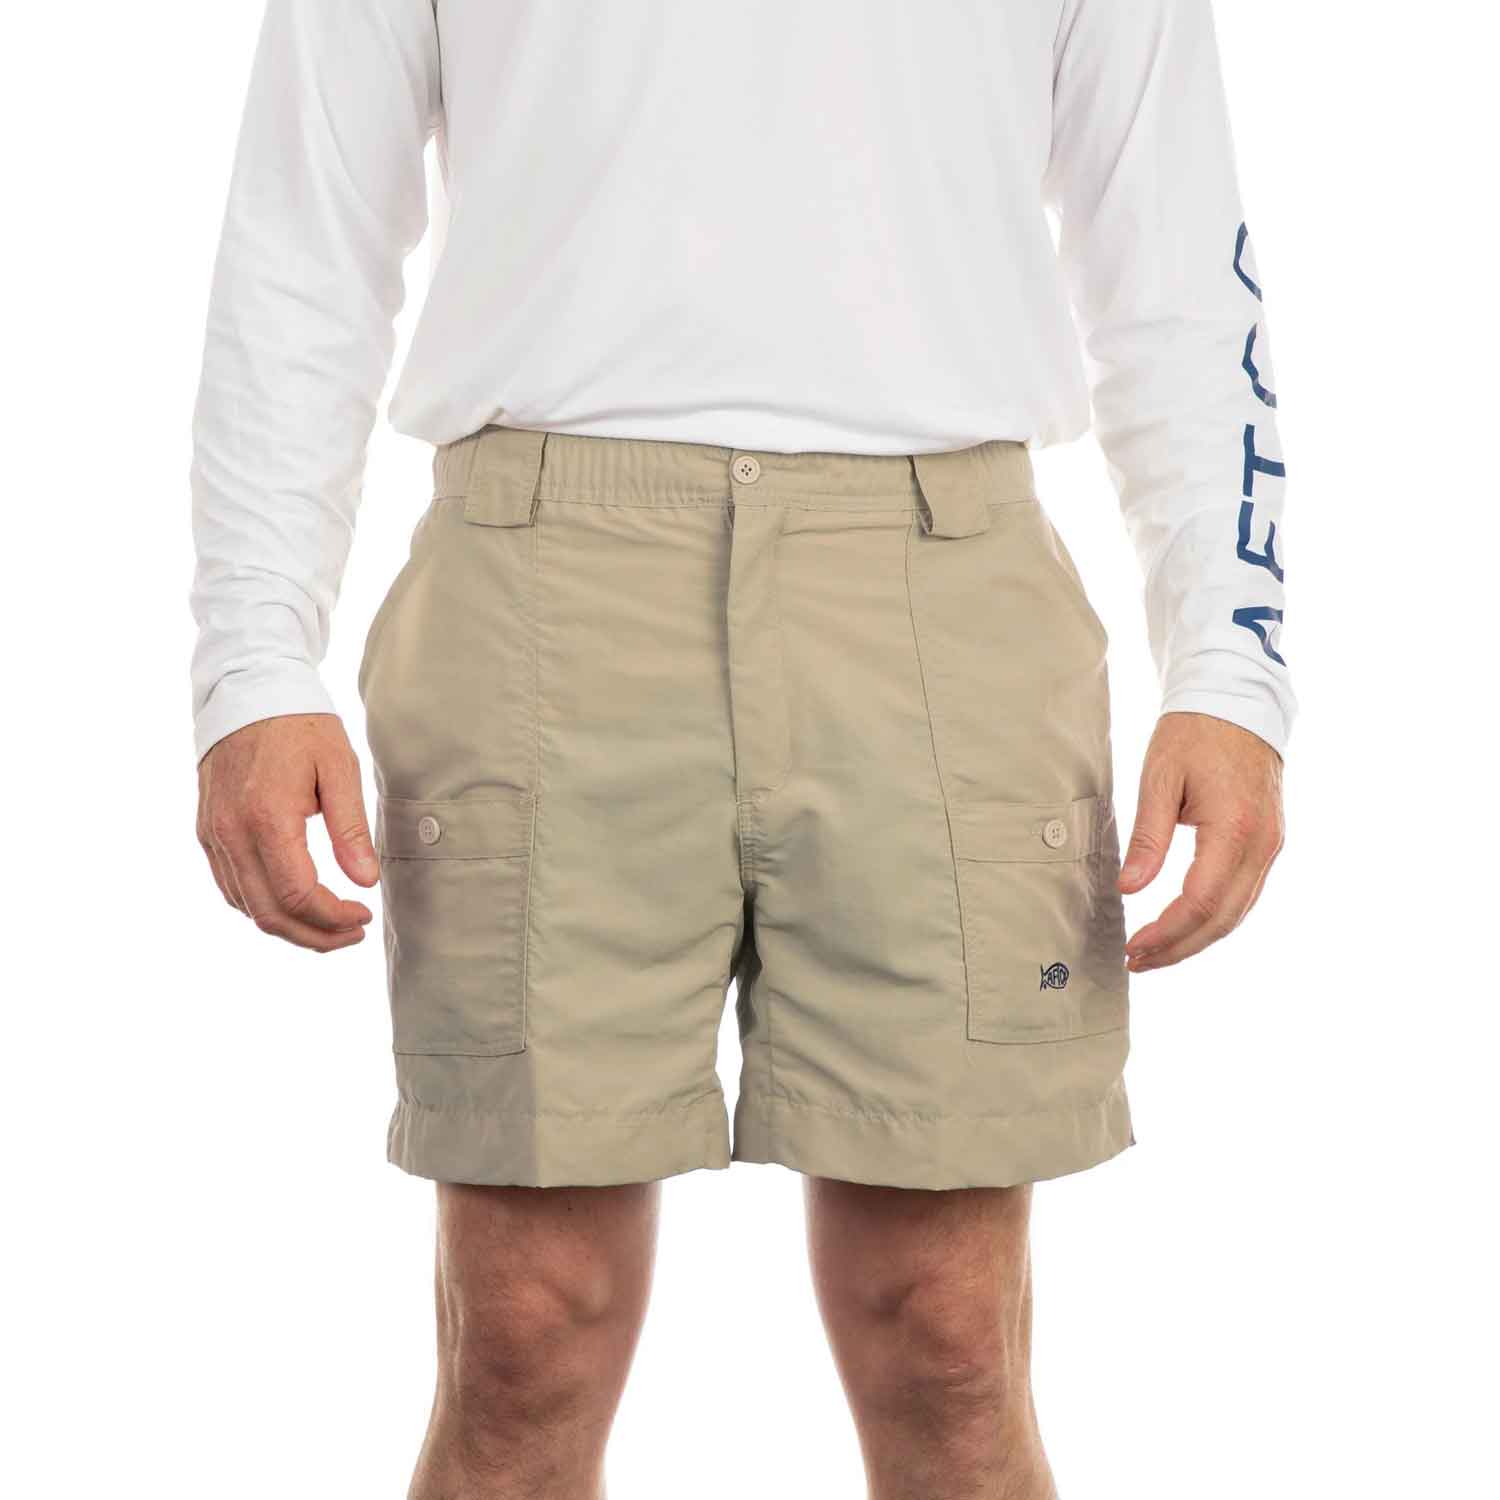 Men's Fishing Shorts & Pants